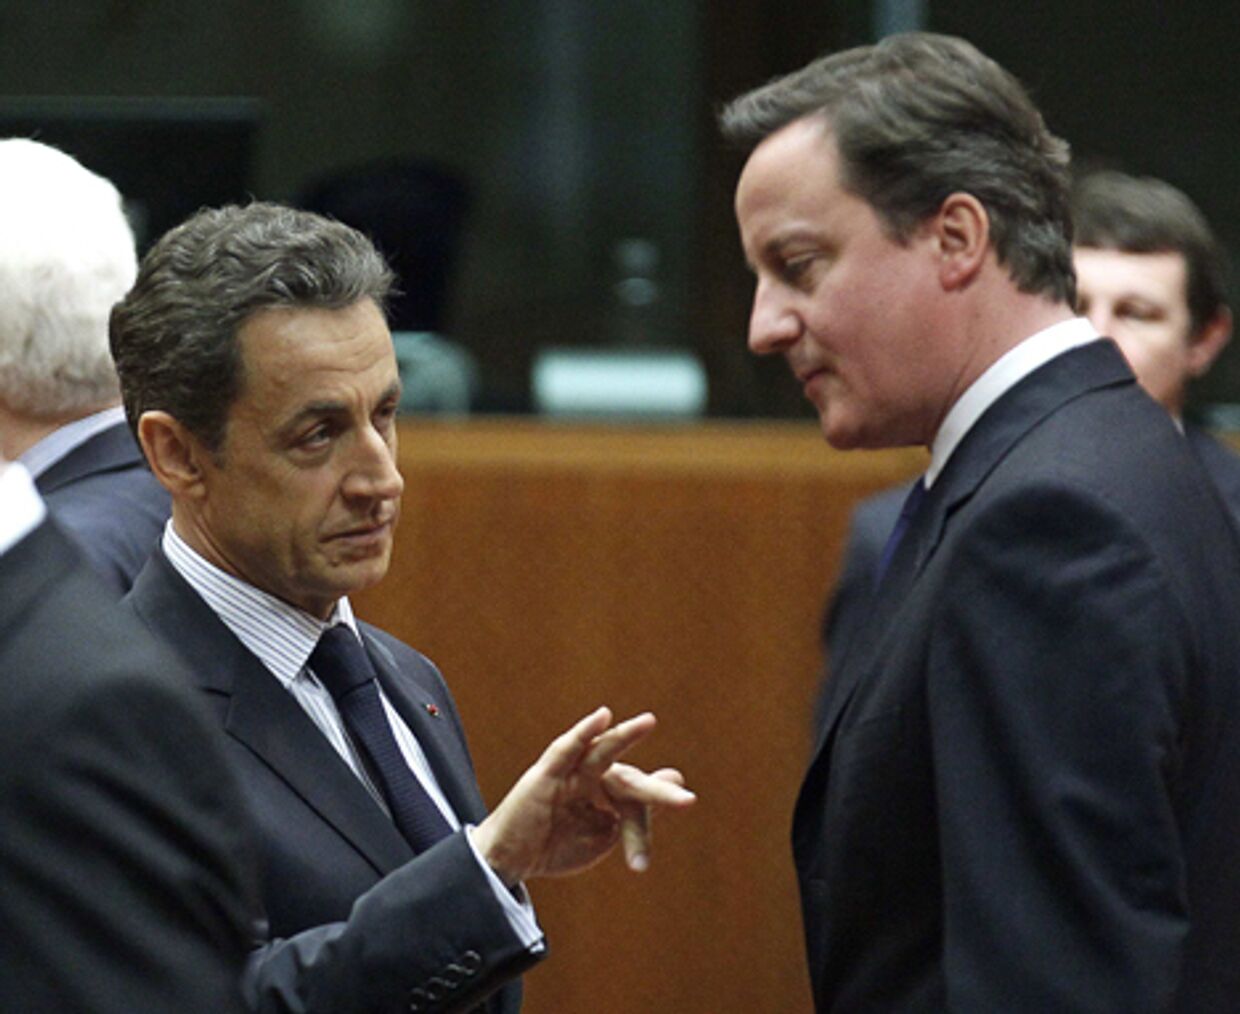  саркози заявил о готовности с великобританией нанести точечный авиаудар по ливии